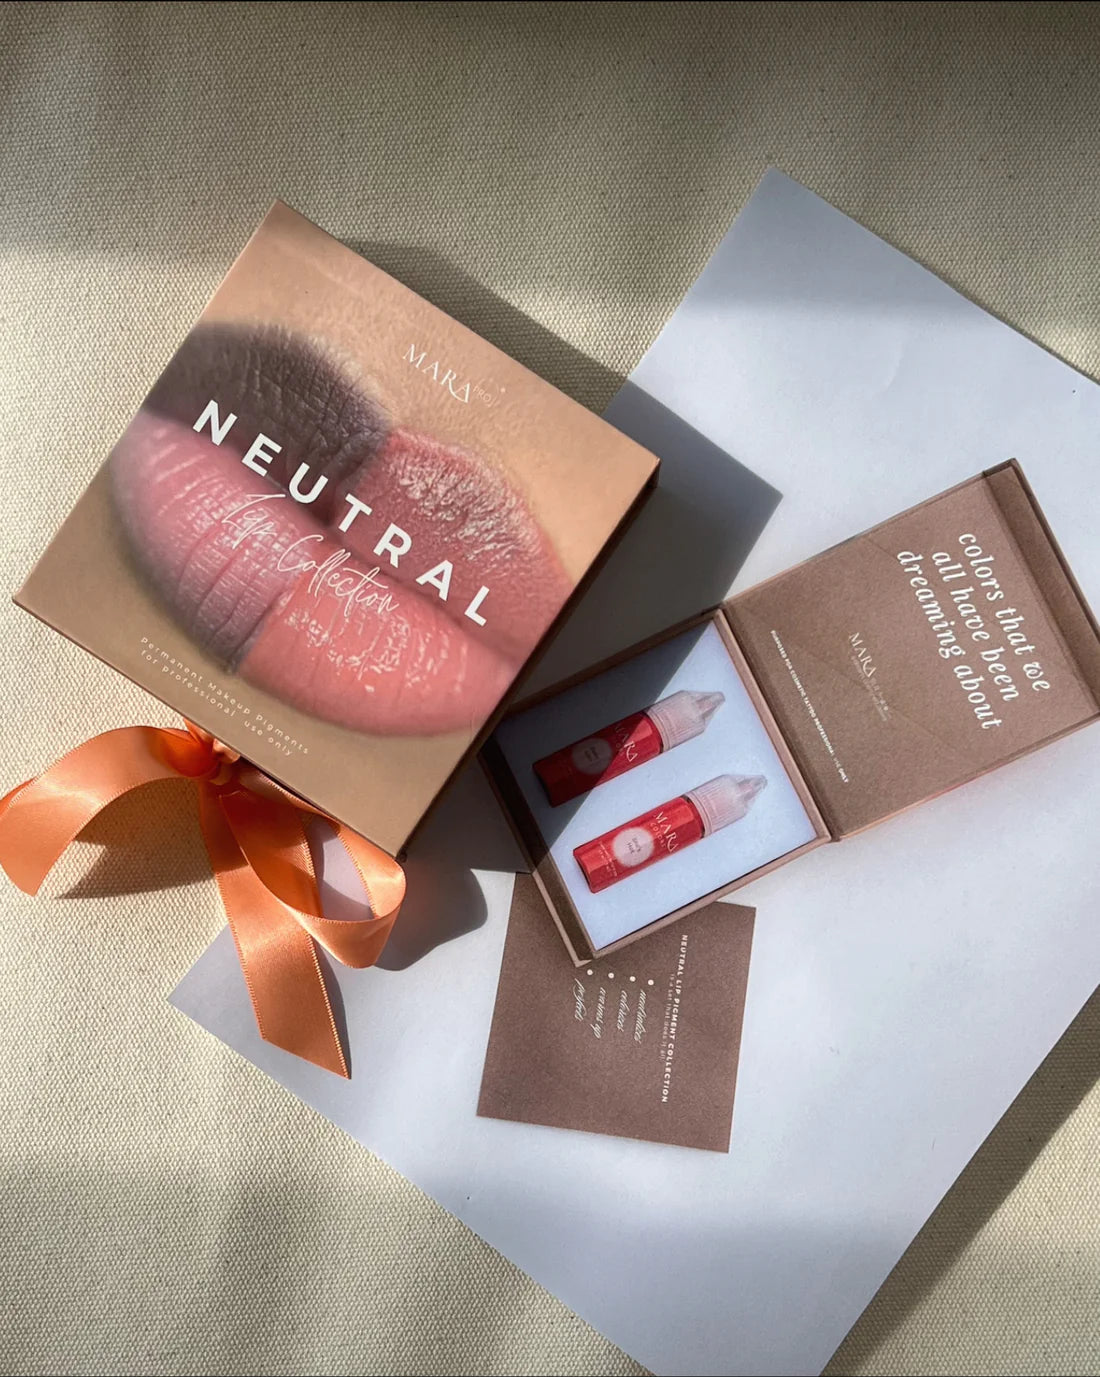 NEW MARA Pro Neutral Lip Pigments Set